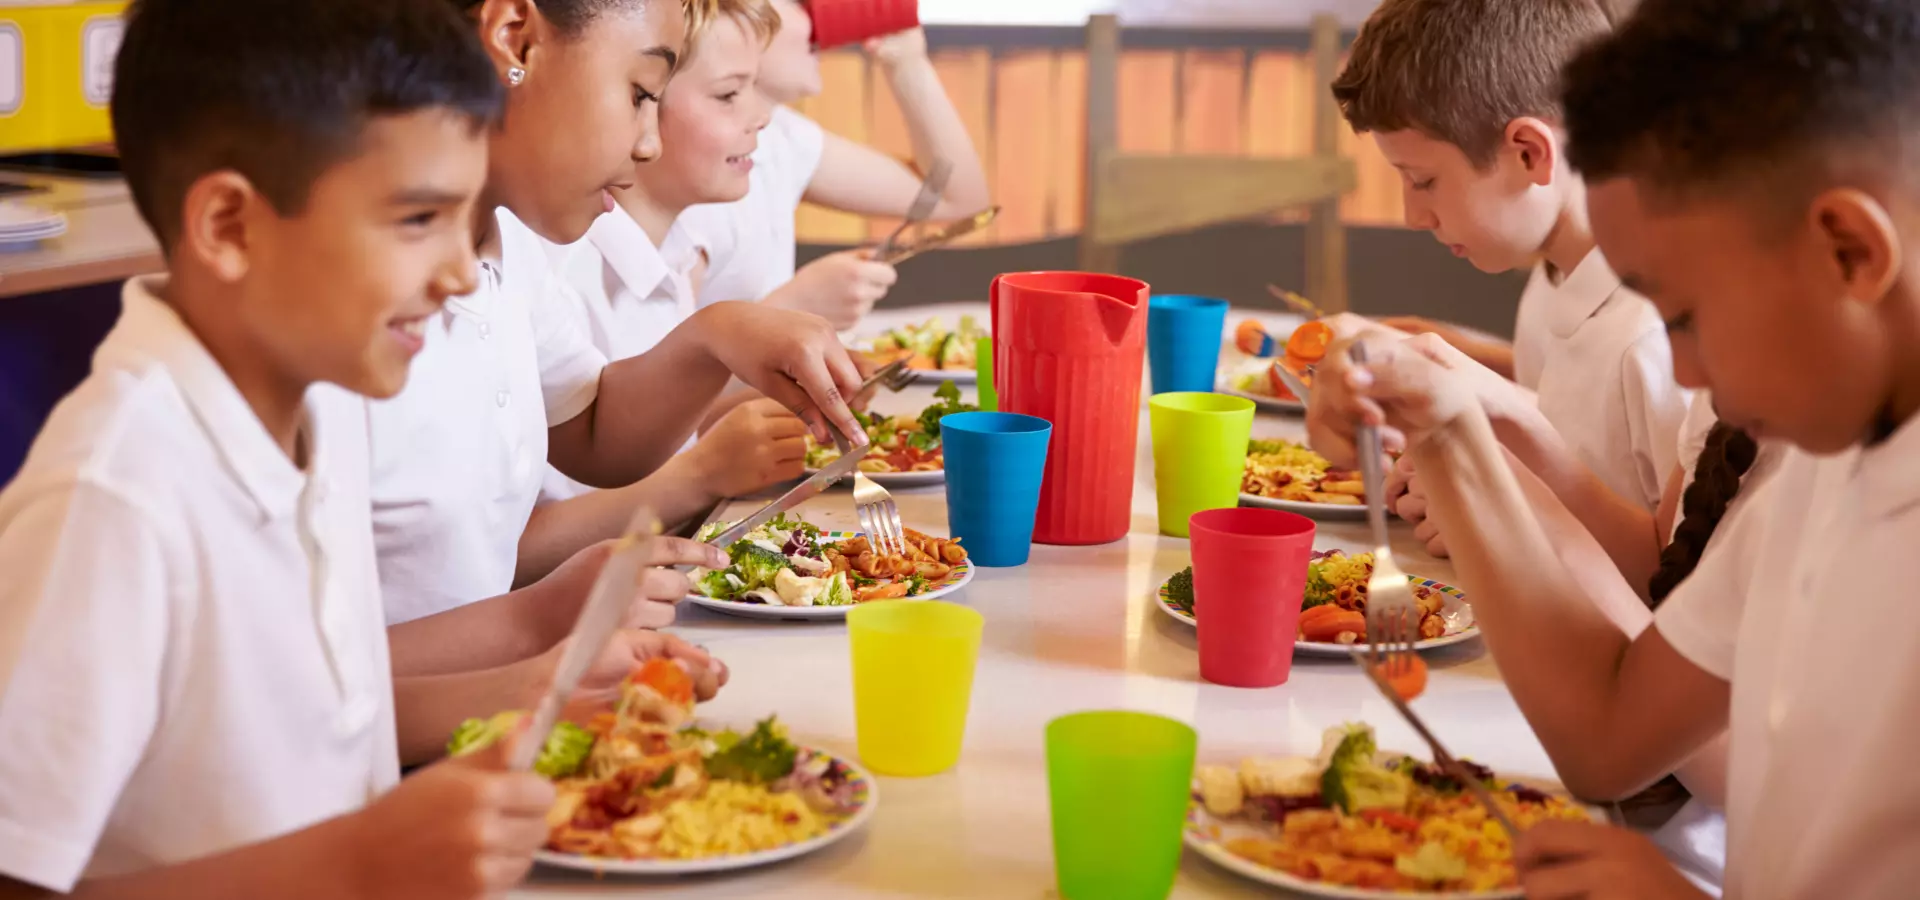 Children in school uniforms having lunch.